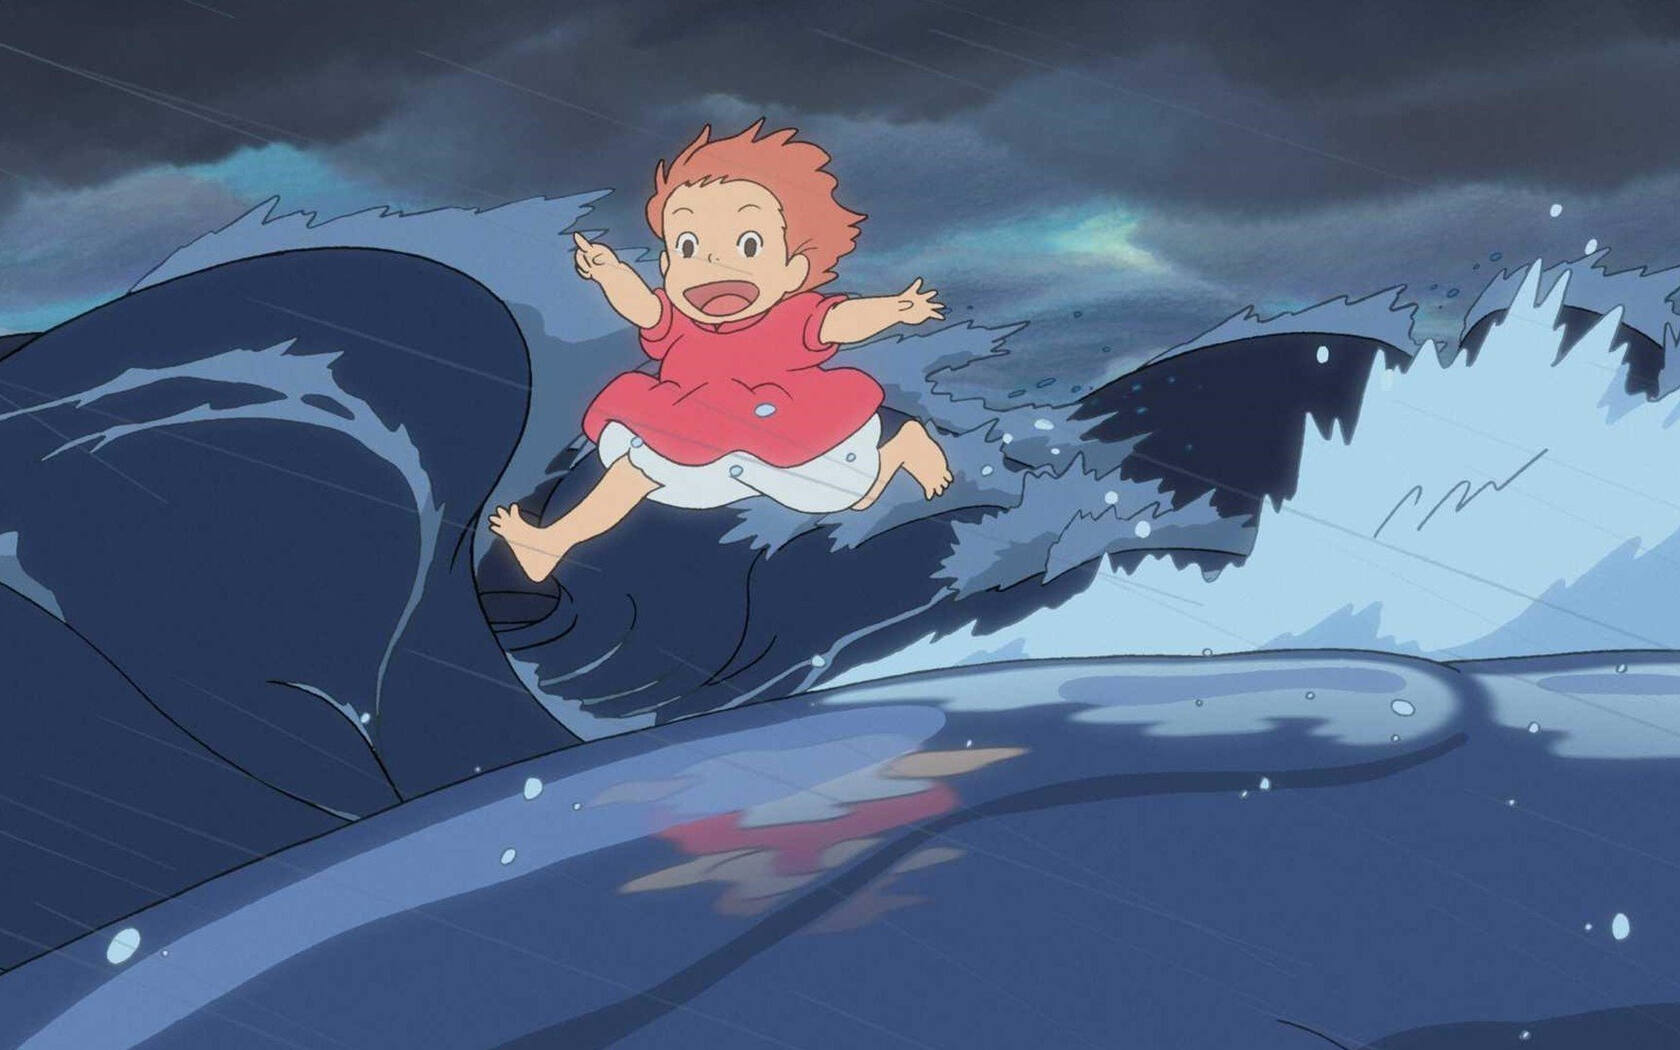 宫崎骏动漫作品“起风了”影视原画高清电脑壁纸合集第1张图片